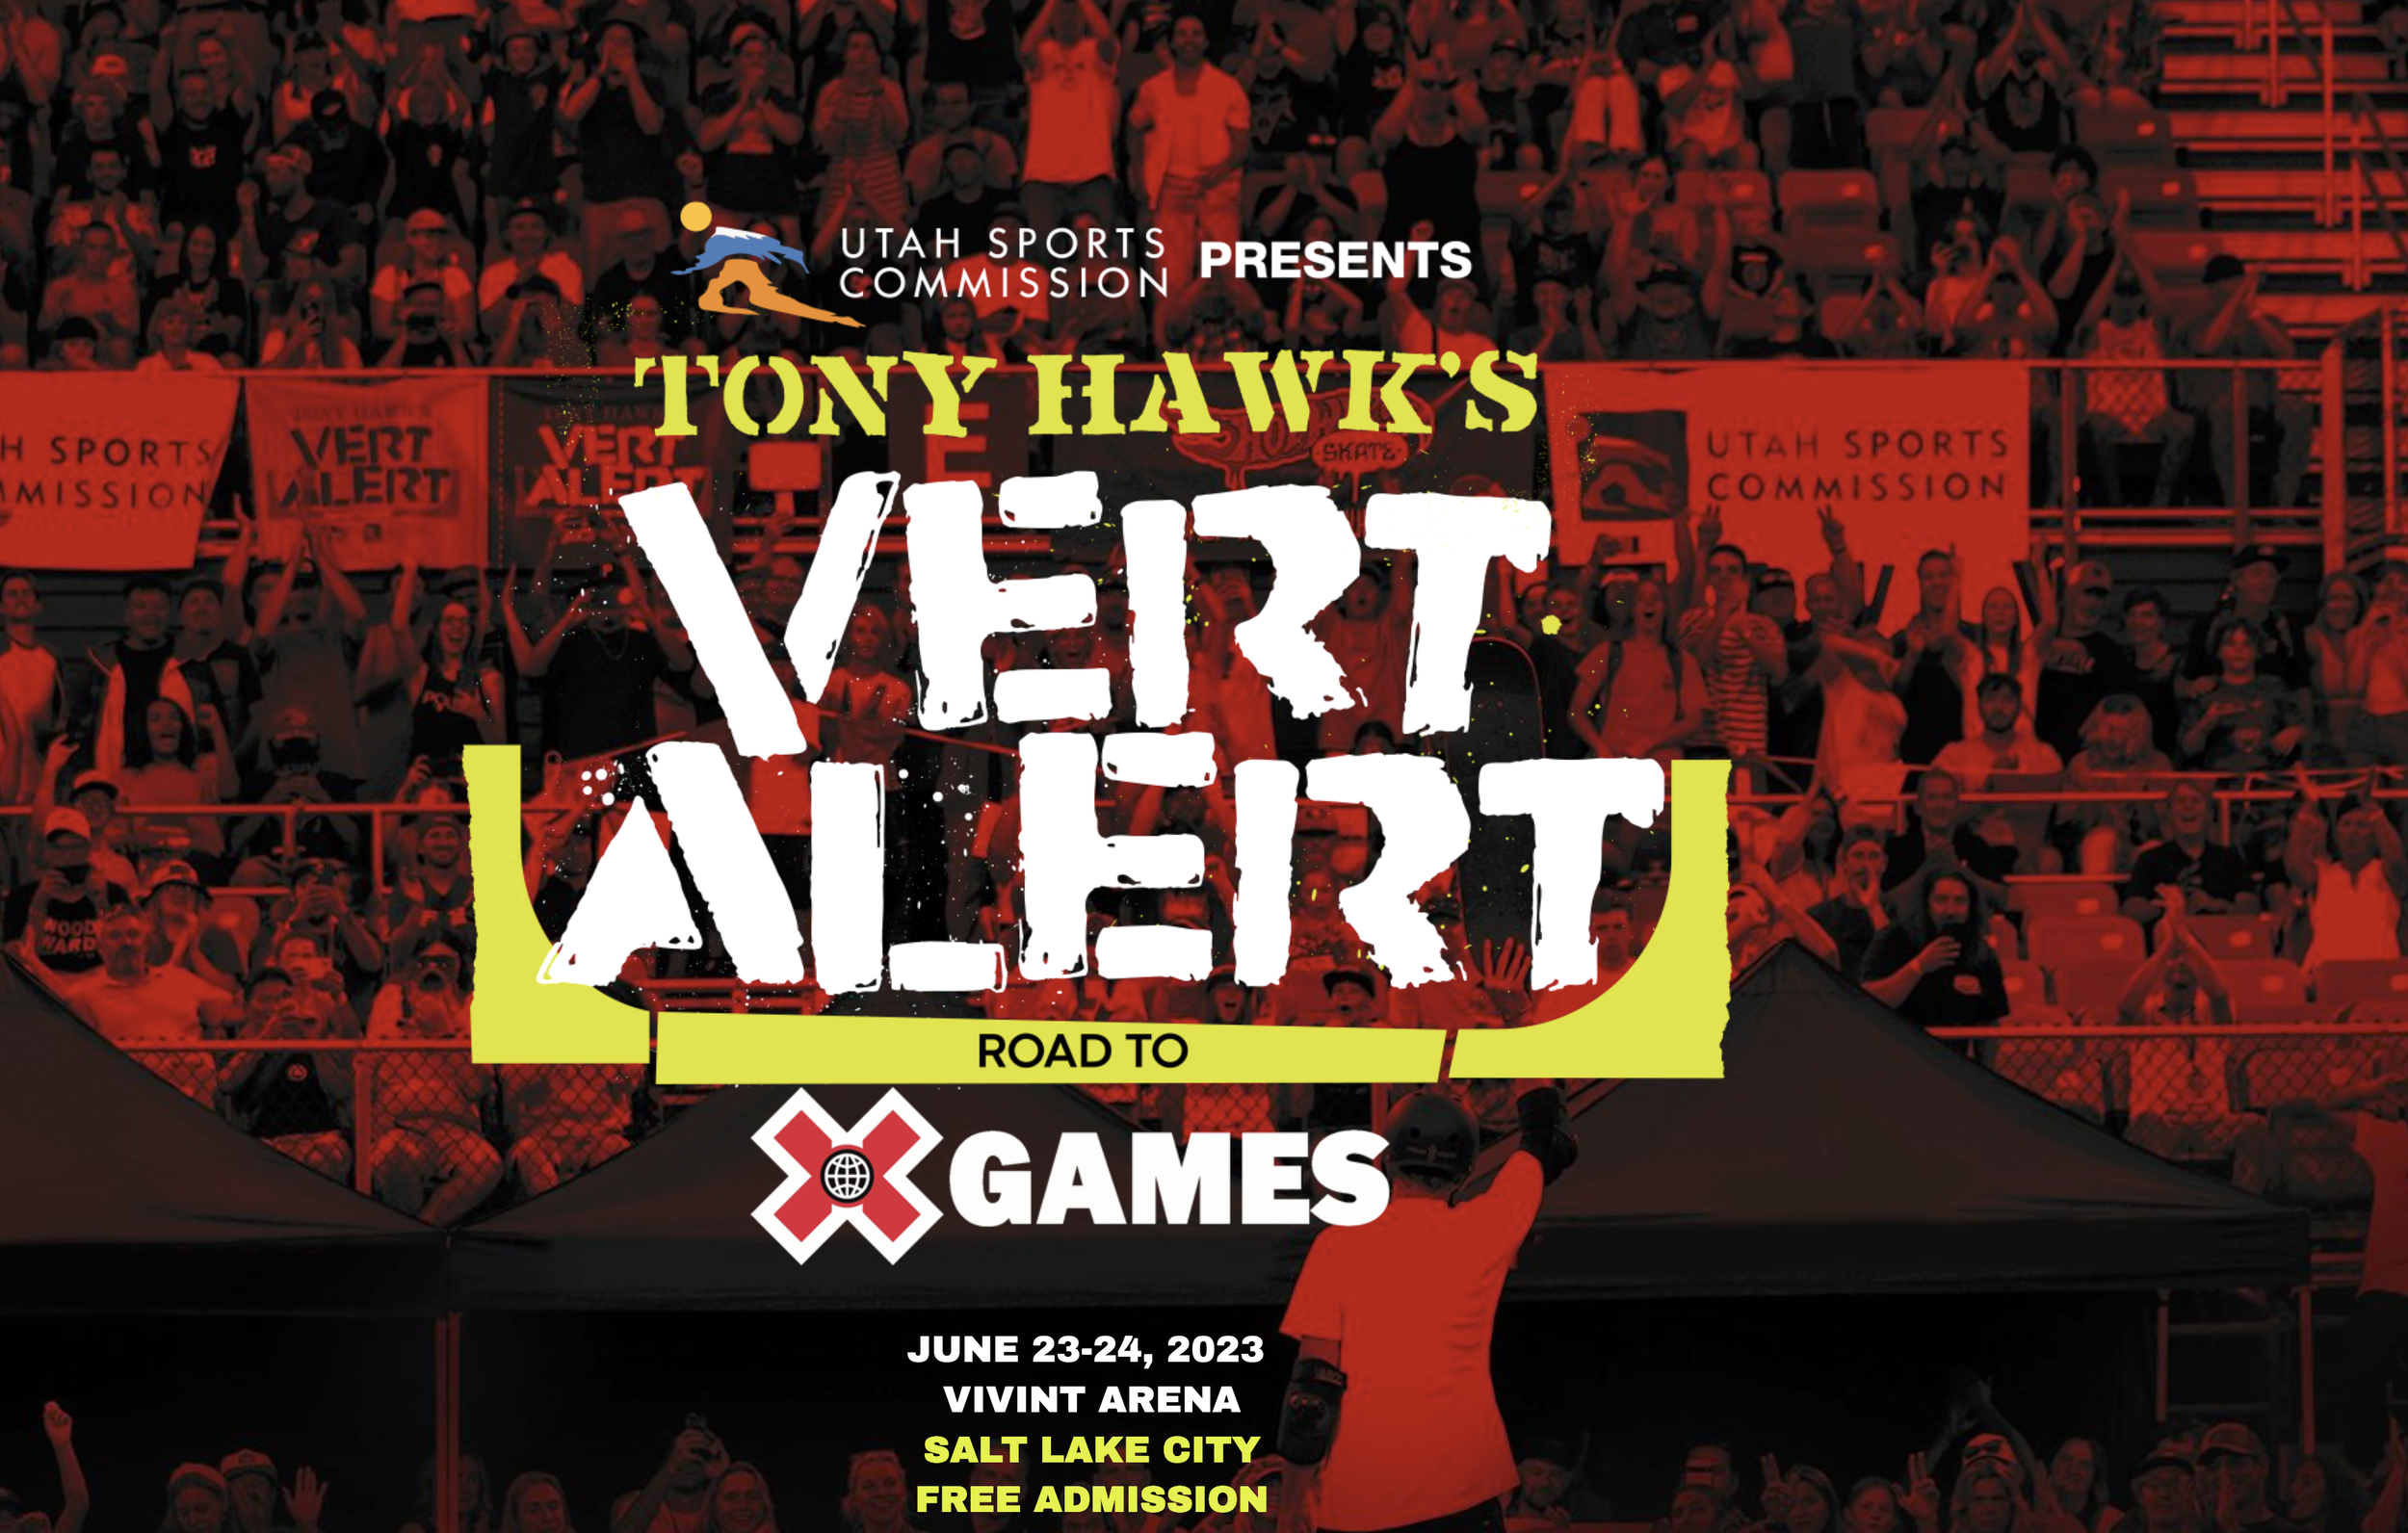 Tony Hawk's Vert Alert